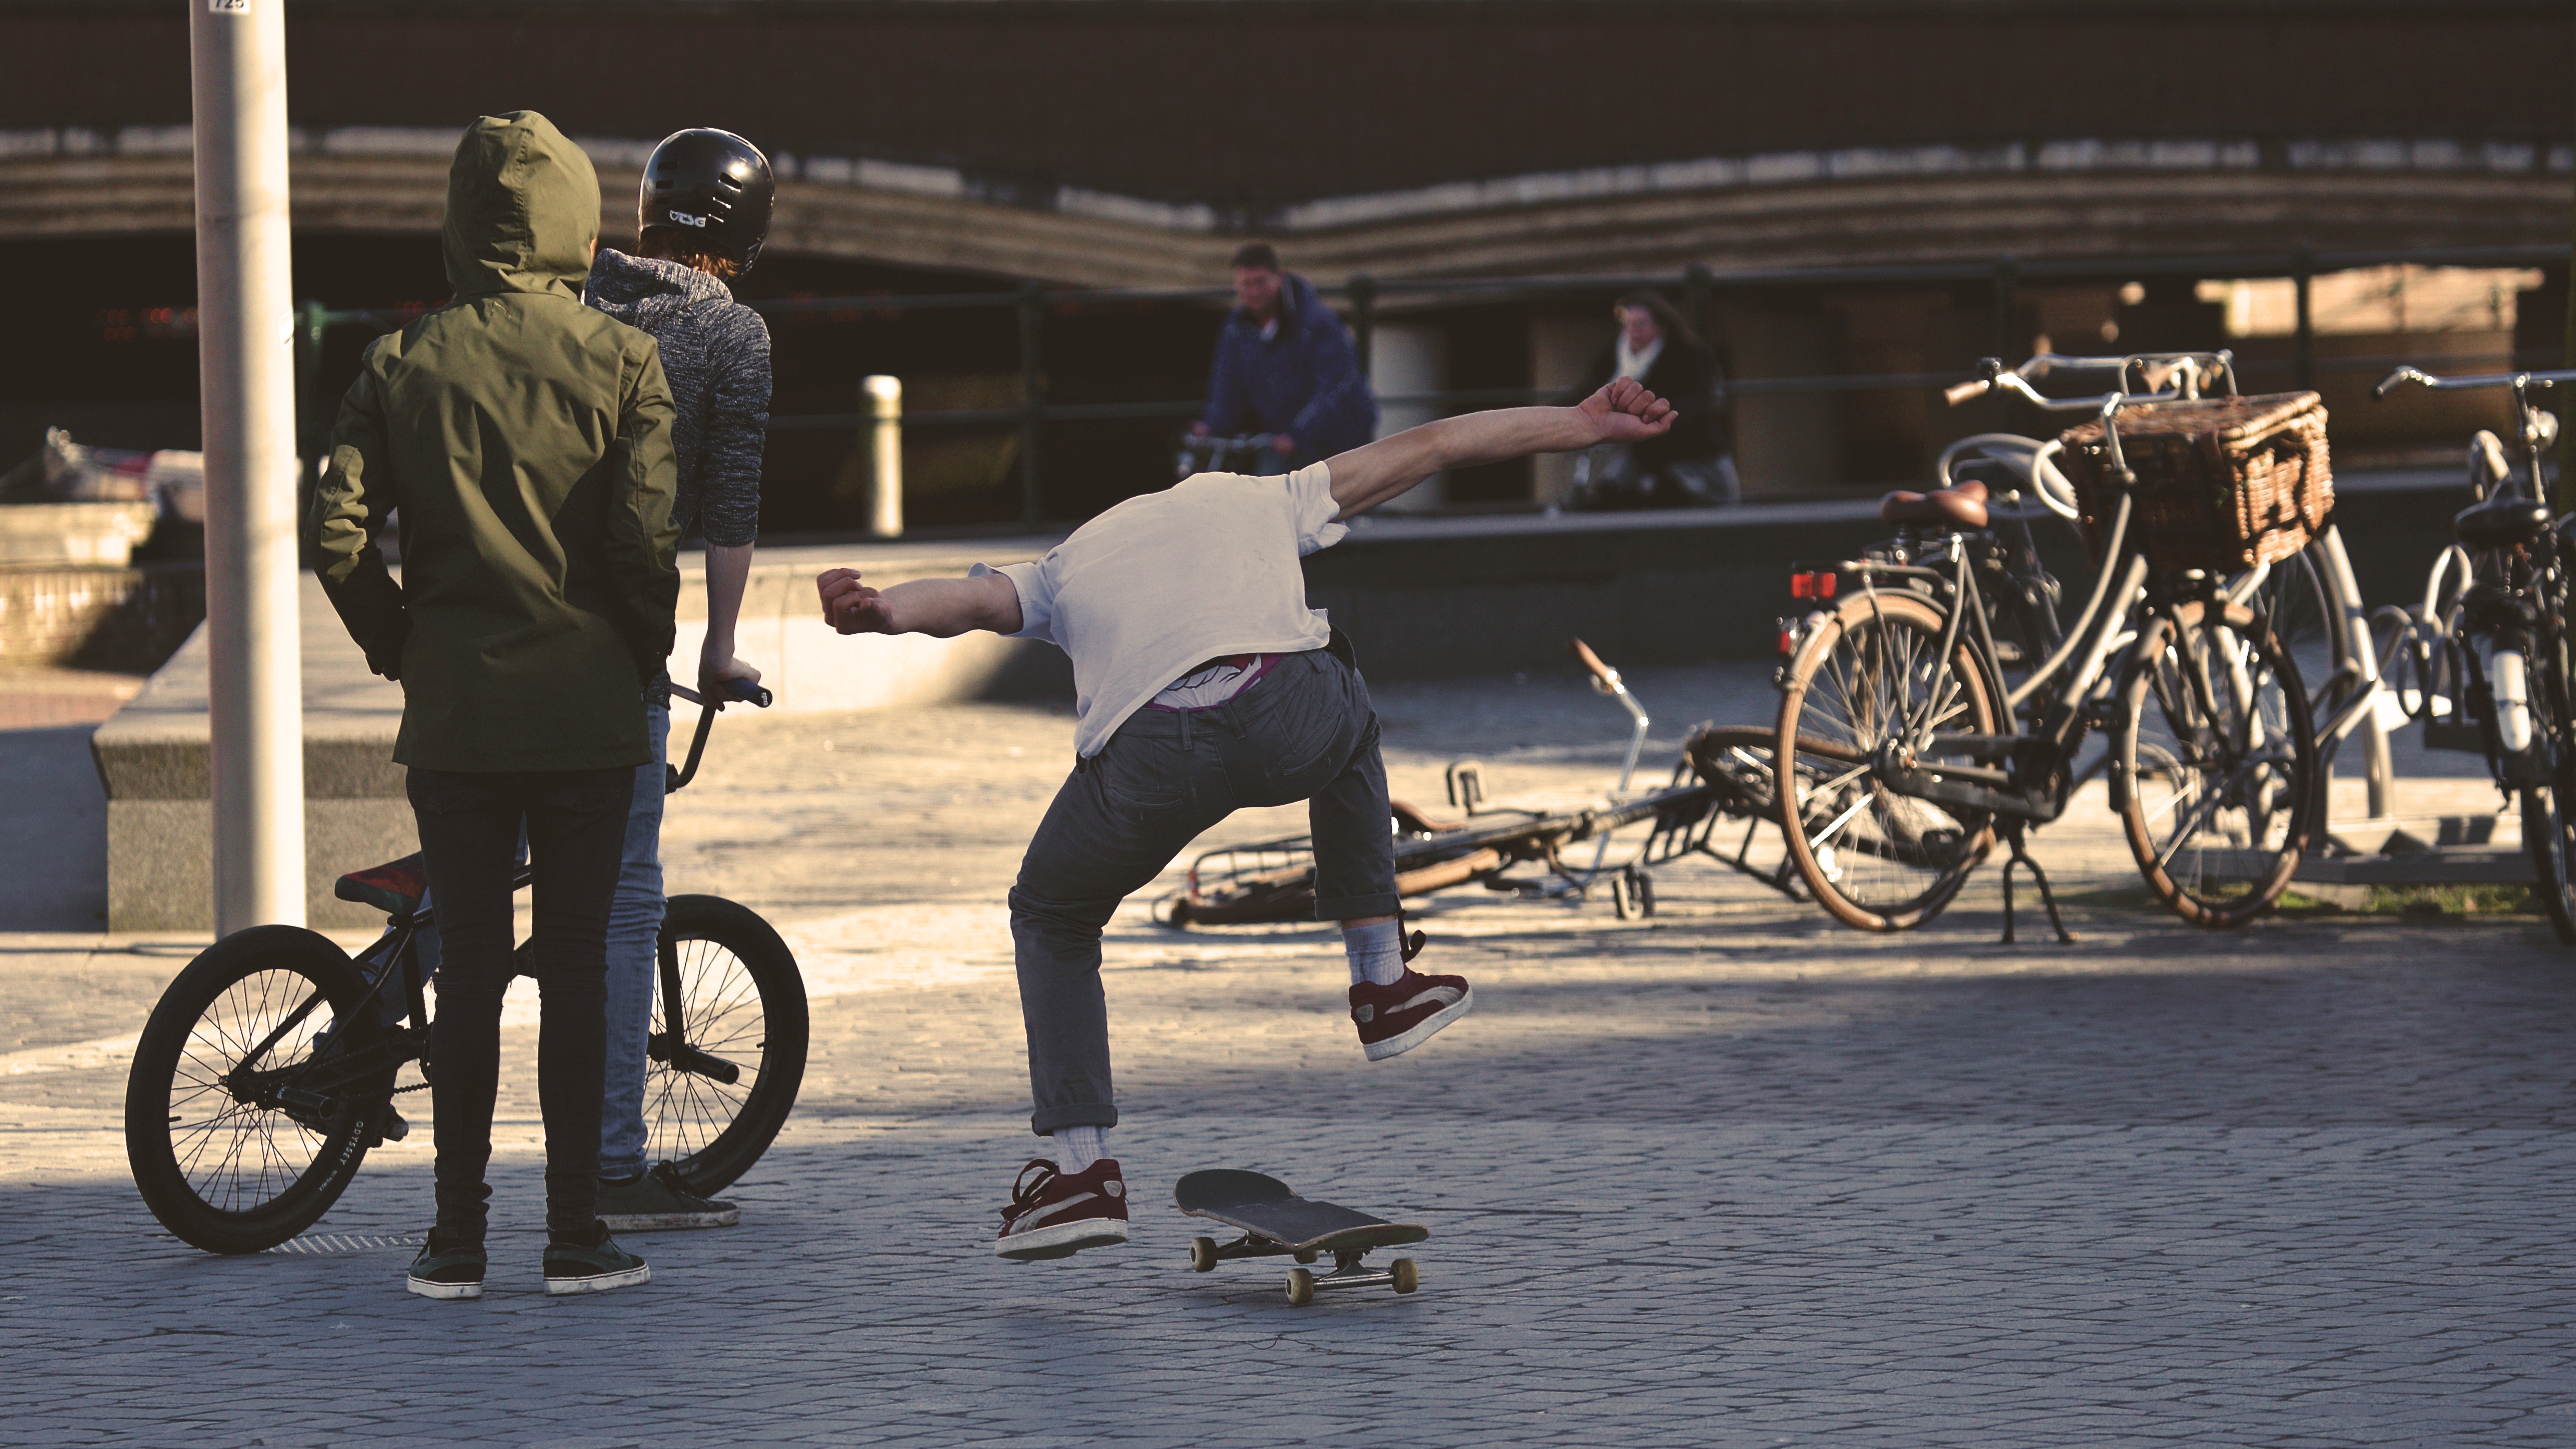 Skate bike. Трюки на велосипеде. Скейтеры в городе. Велосипедист молодежь. Велосипед из людей трюк.